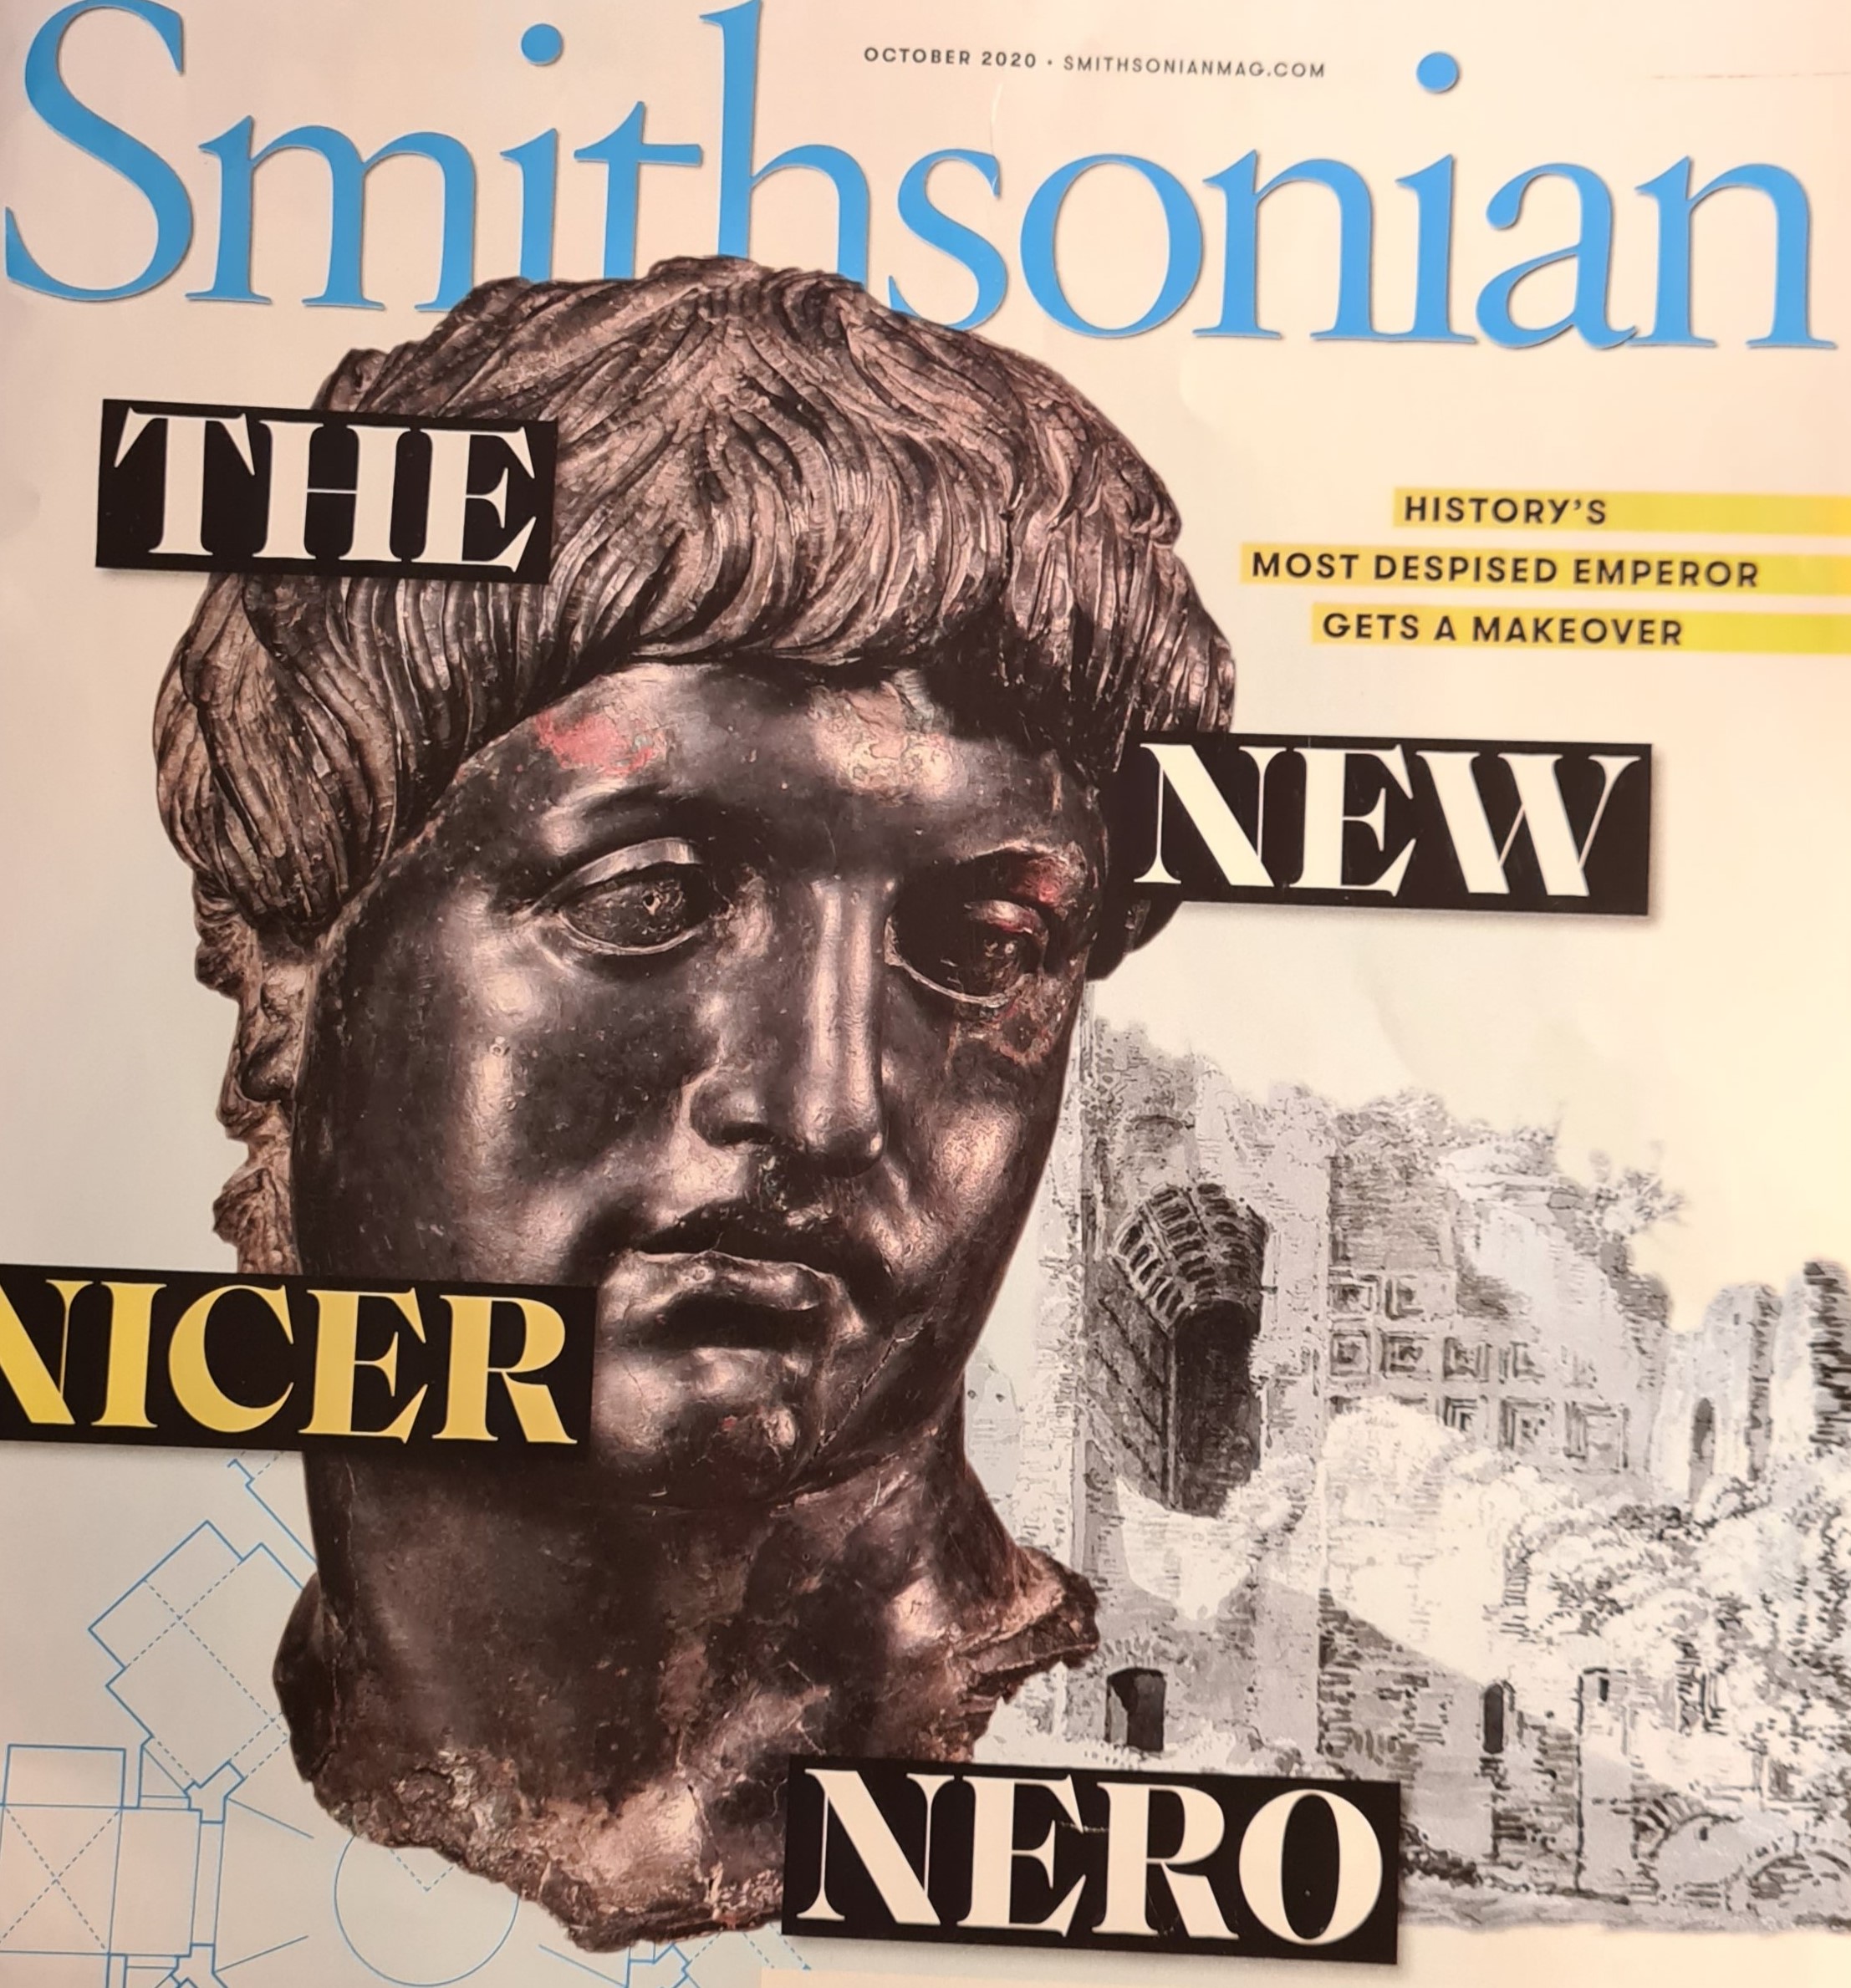 La più grande diffamazione della storia antica: Nerone. E lo Smithsonian chiede lumi al nostro Angelo Paratico